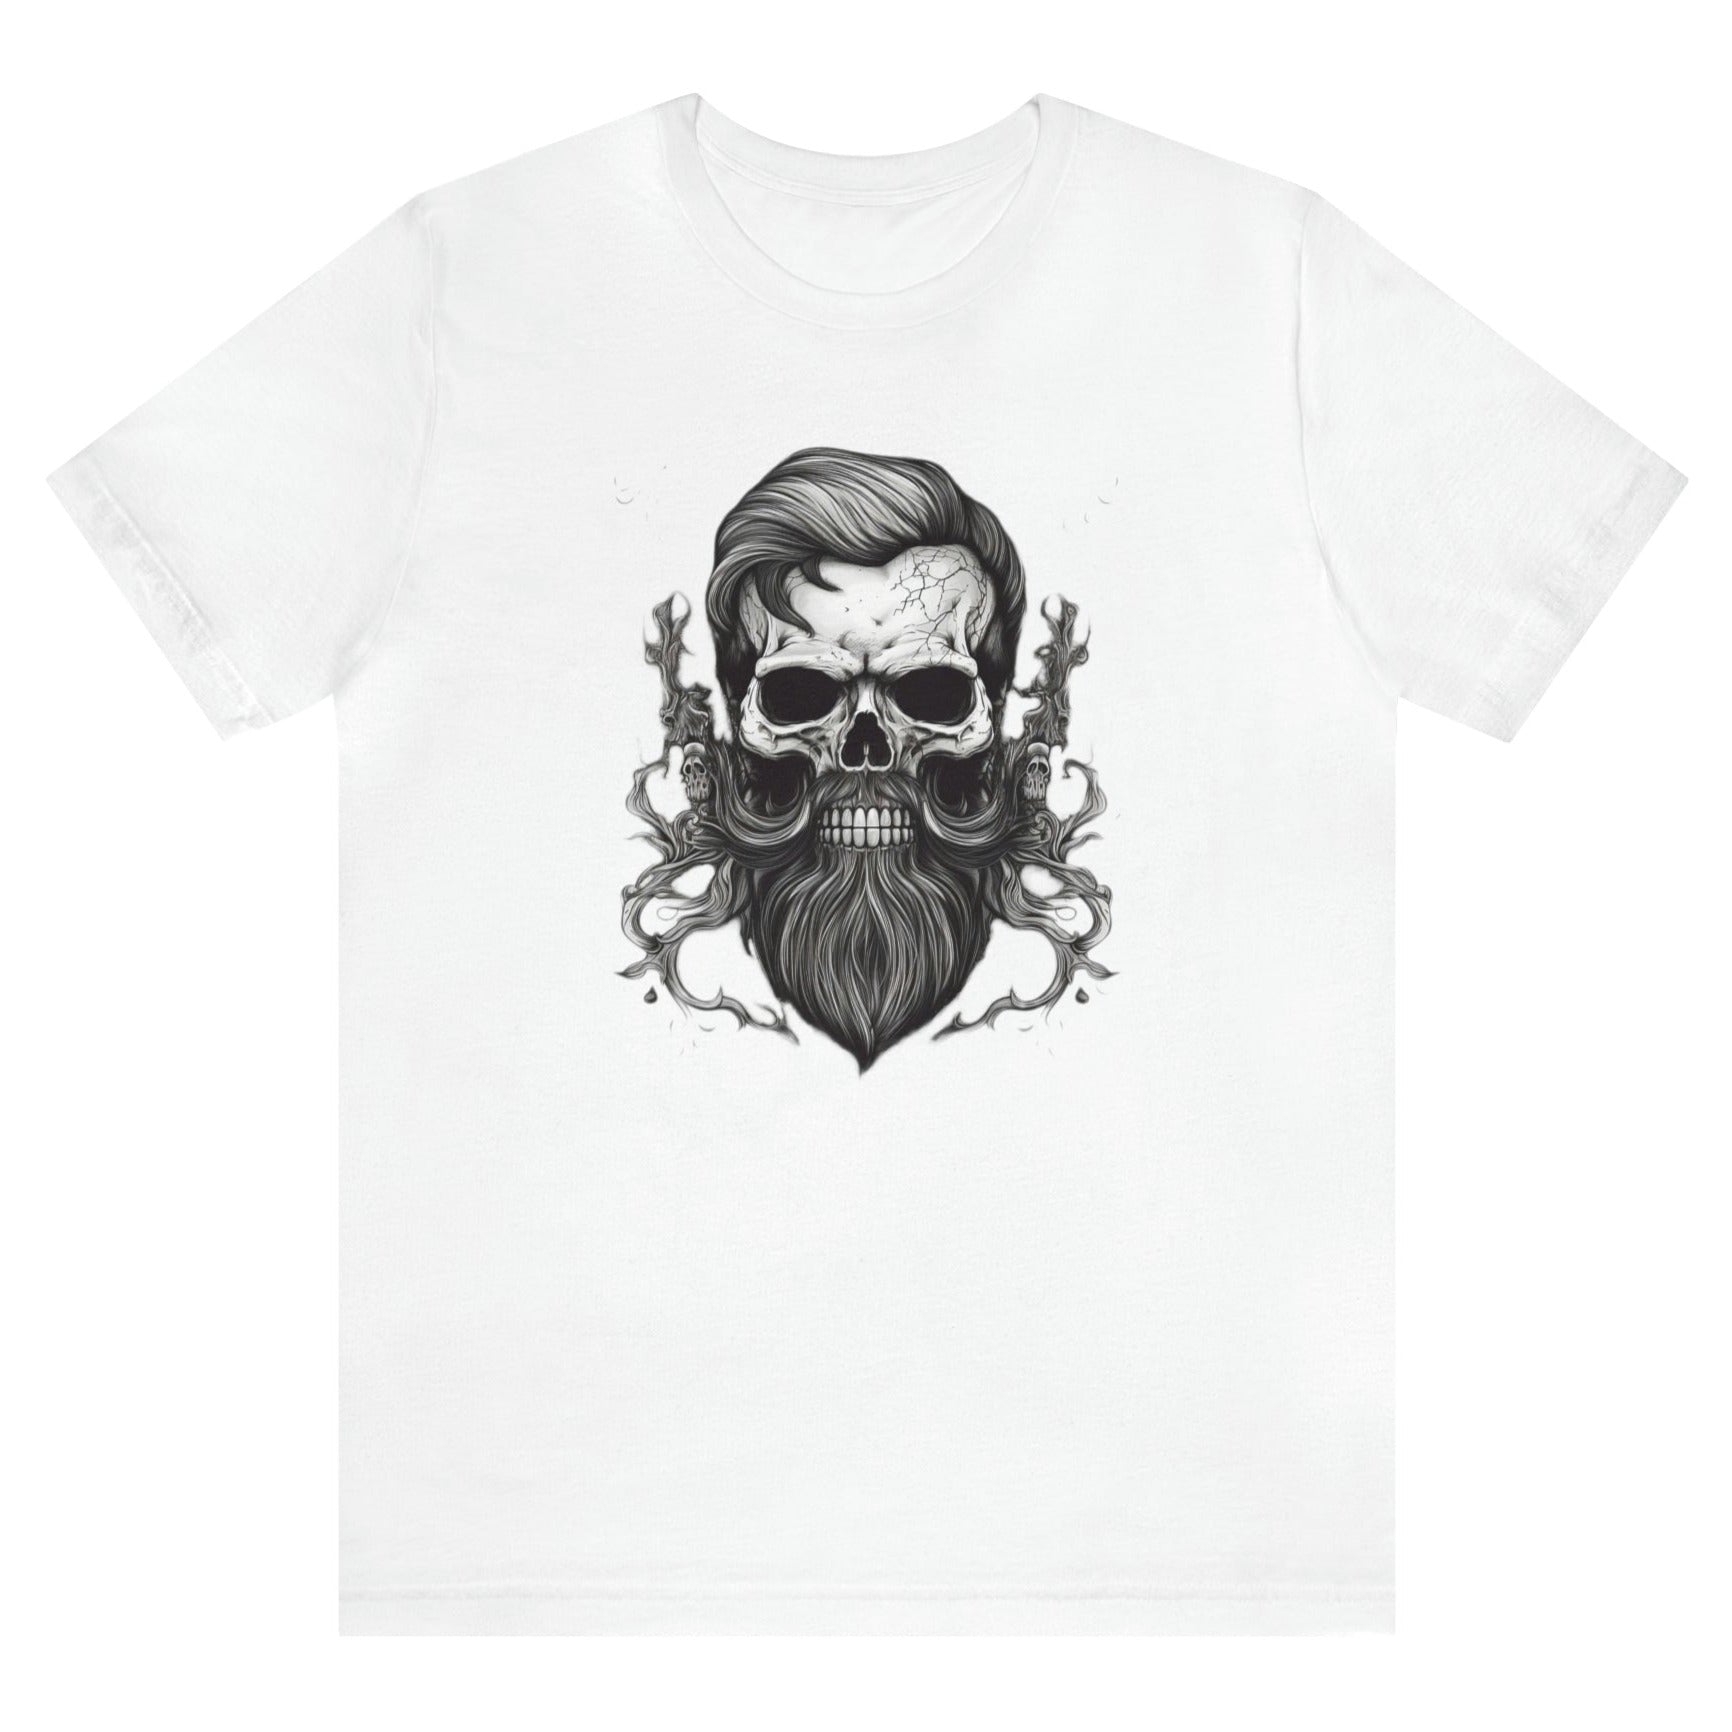 Forever-bearded-skull-with-moustache-and-beard-white-t-shirt-